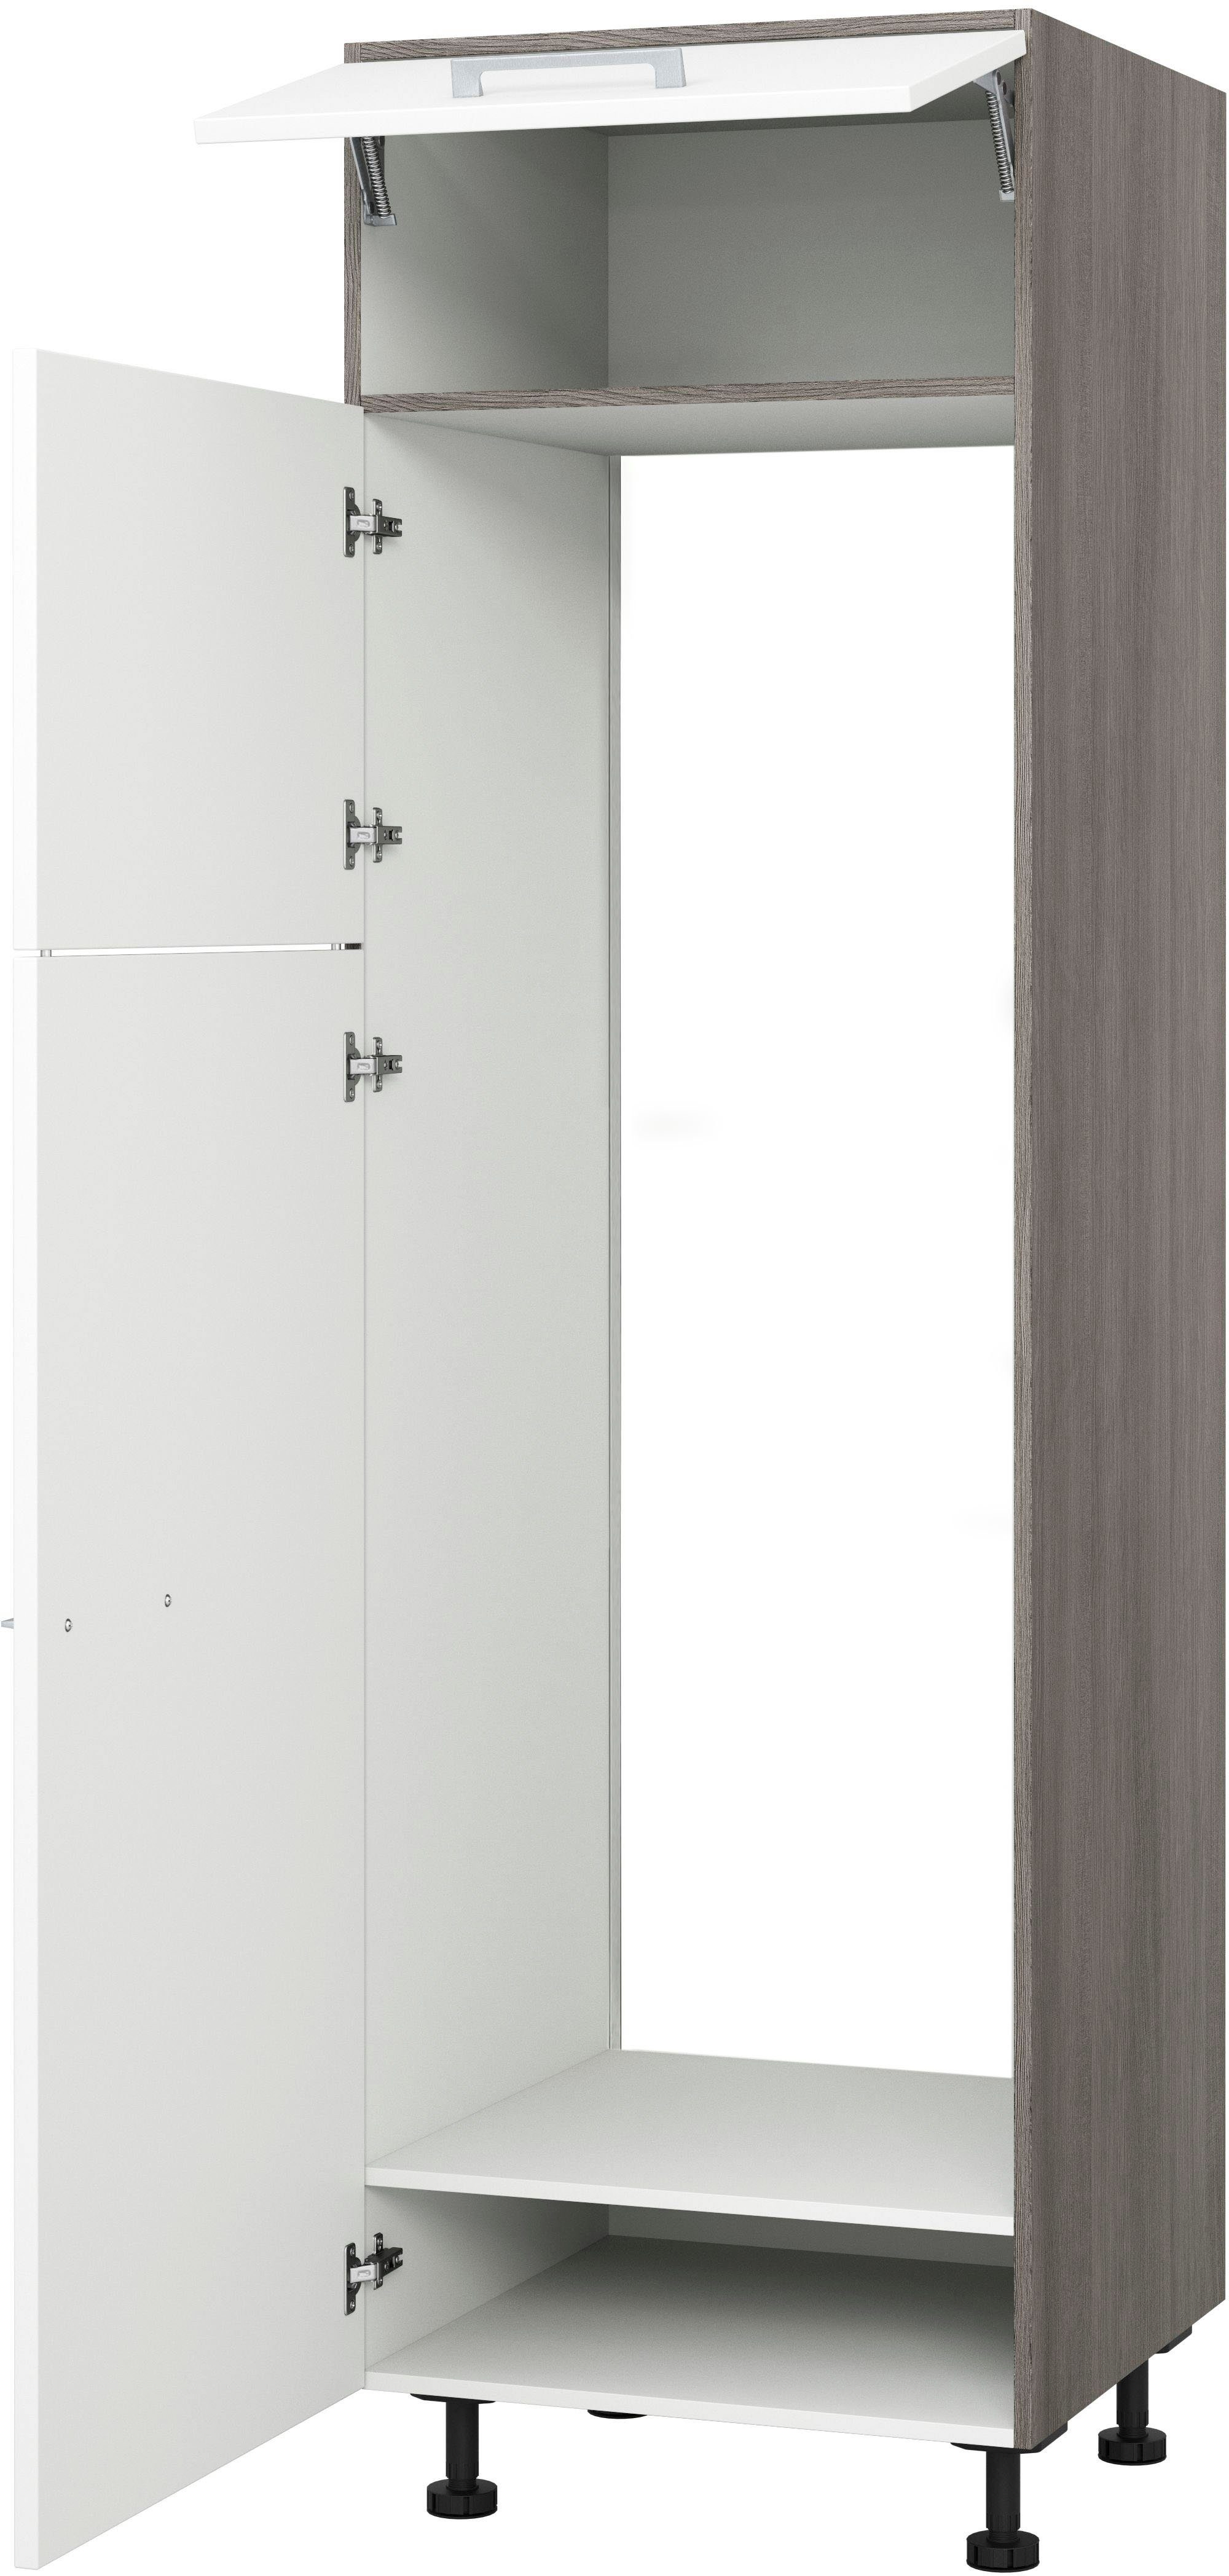 cm, cm, 195 für 60 Kühl-Gefrierkombi integrierte Kühlumbauschrank Küchen SKG-195-145 Trea cm Express Höhe Breite 145,0